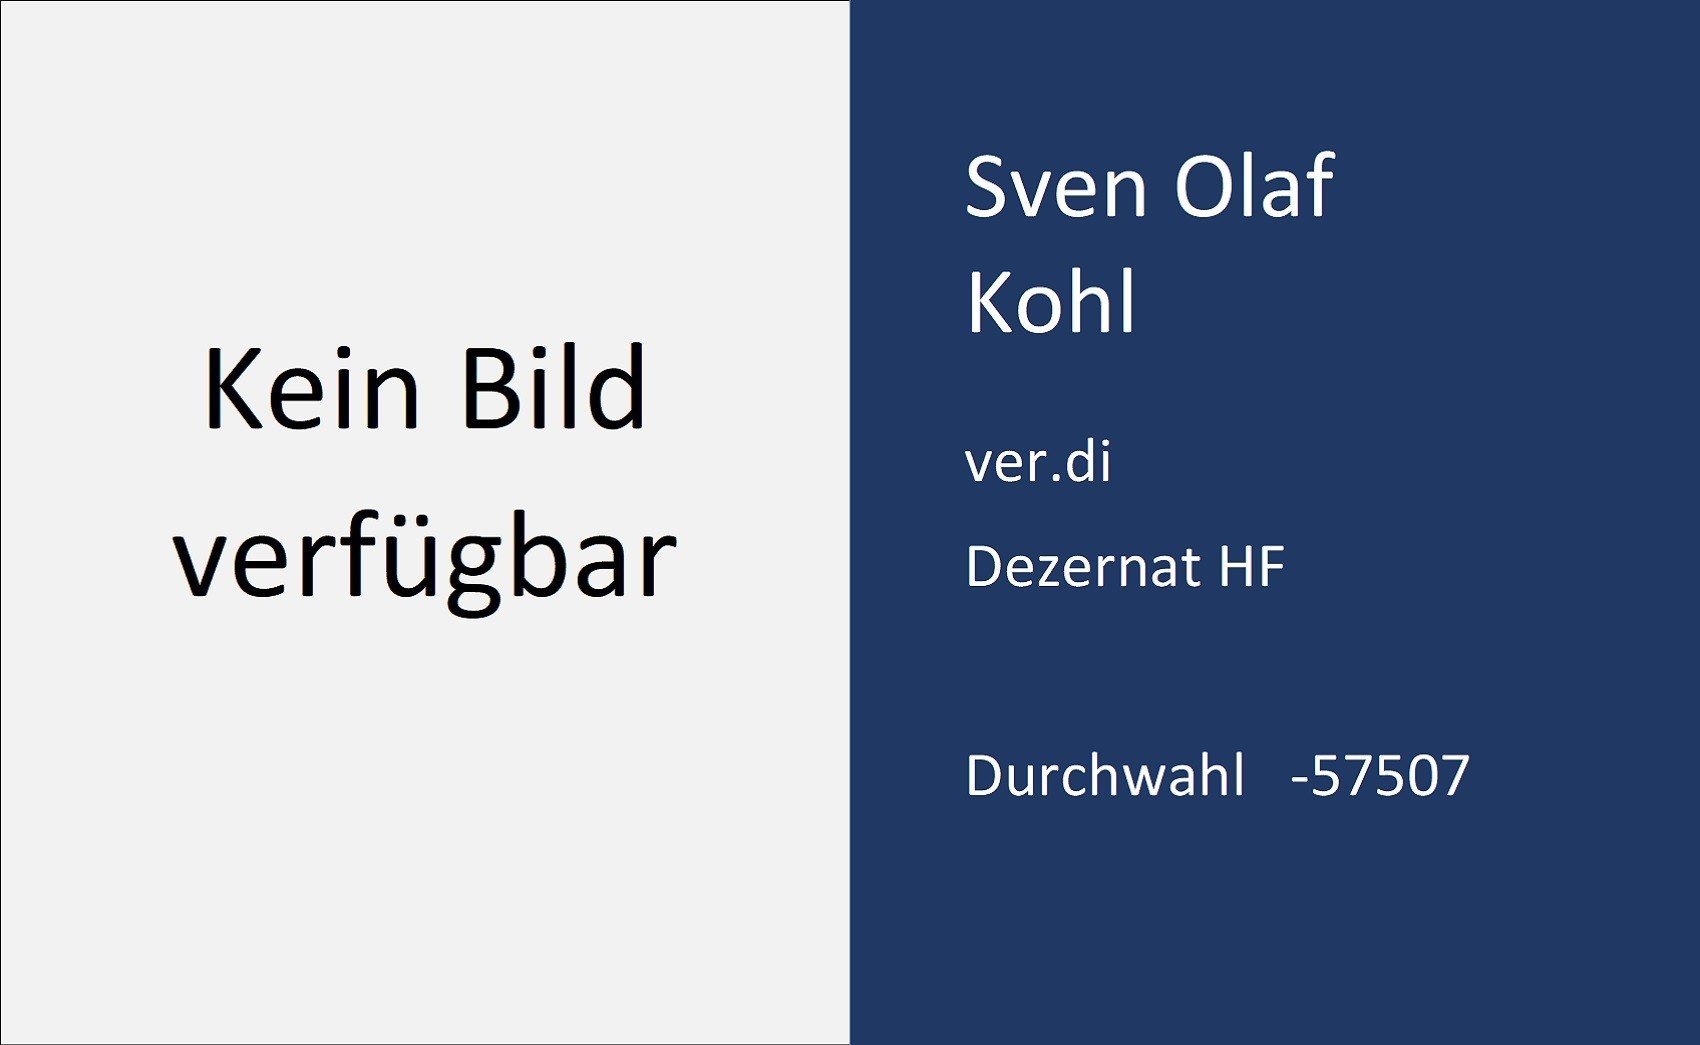 Sven Olaf Kohl, Kontaktdaten, Durchwahl, 5 7 5 0 7, Email, s . kohl ät uni v w.uni minus saarland . d e